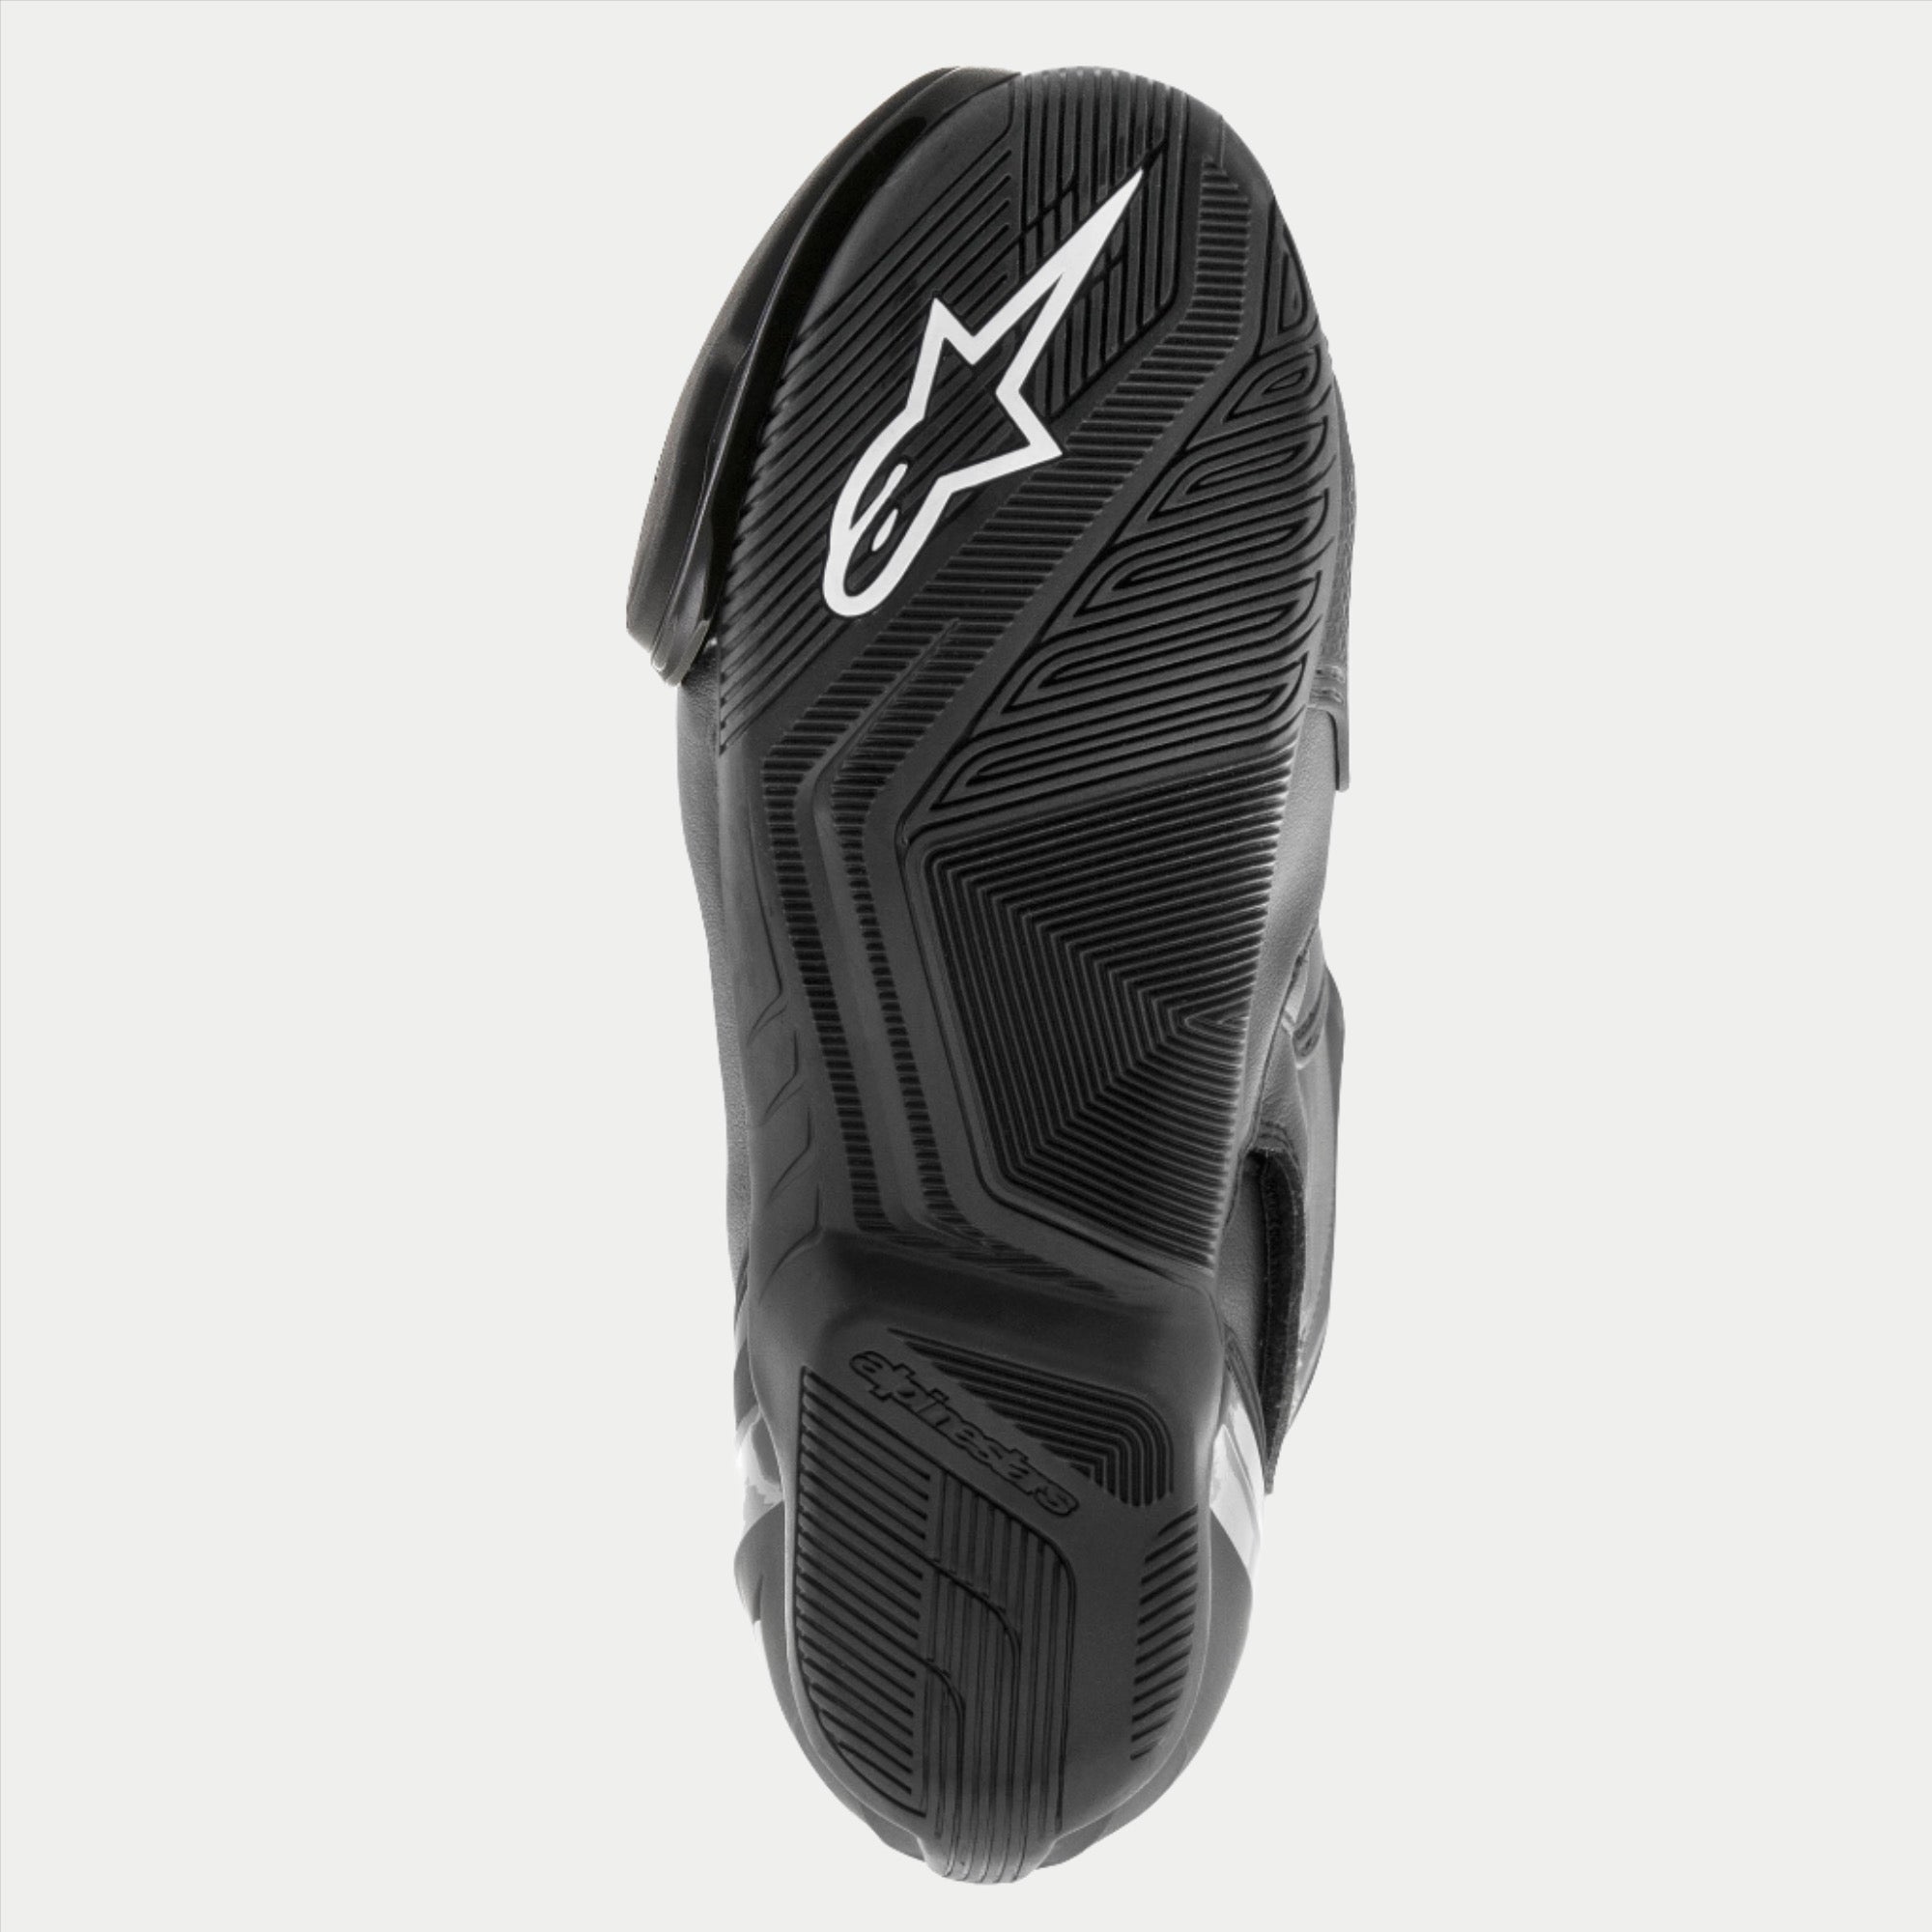 SMX S Waterproof Boots